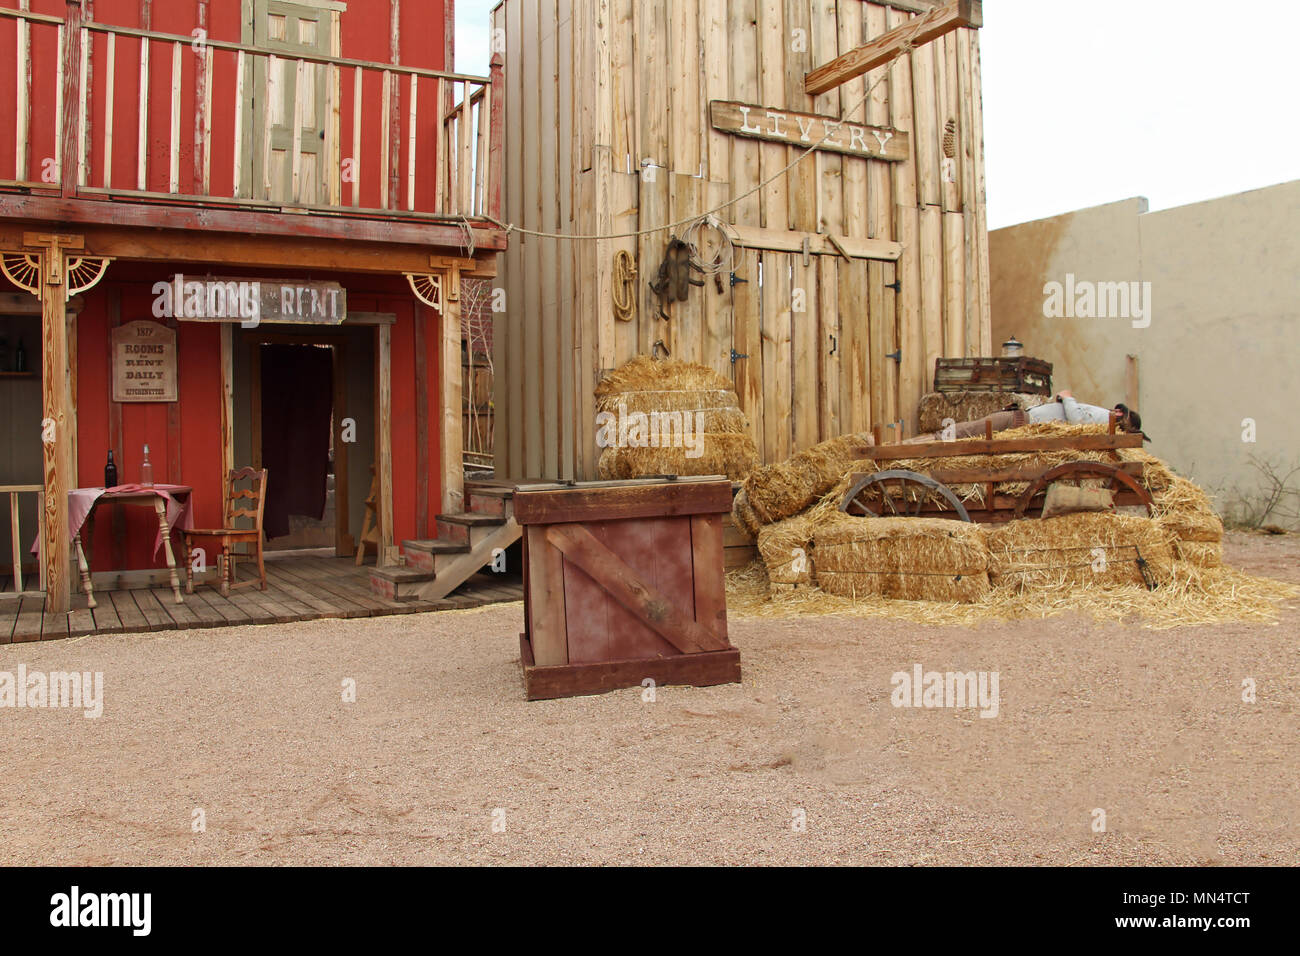 Case occidentali sul palco dell'O.K. Corral gunfight in oggetto contrassegnato per la rimozione definitiva, Arizona Foto Stock